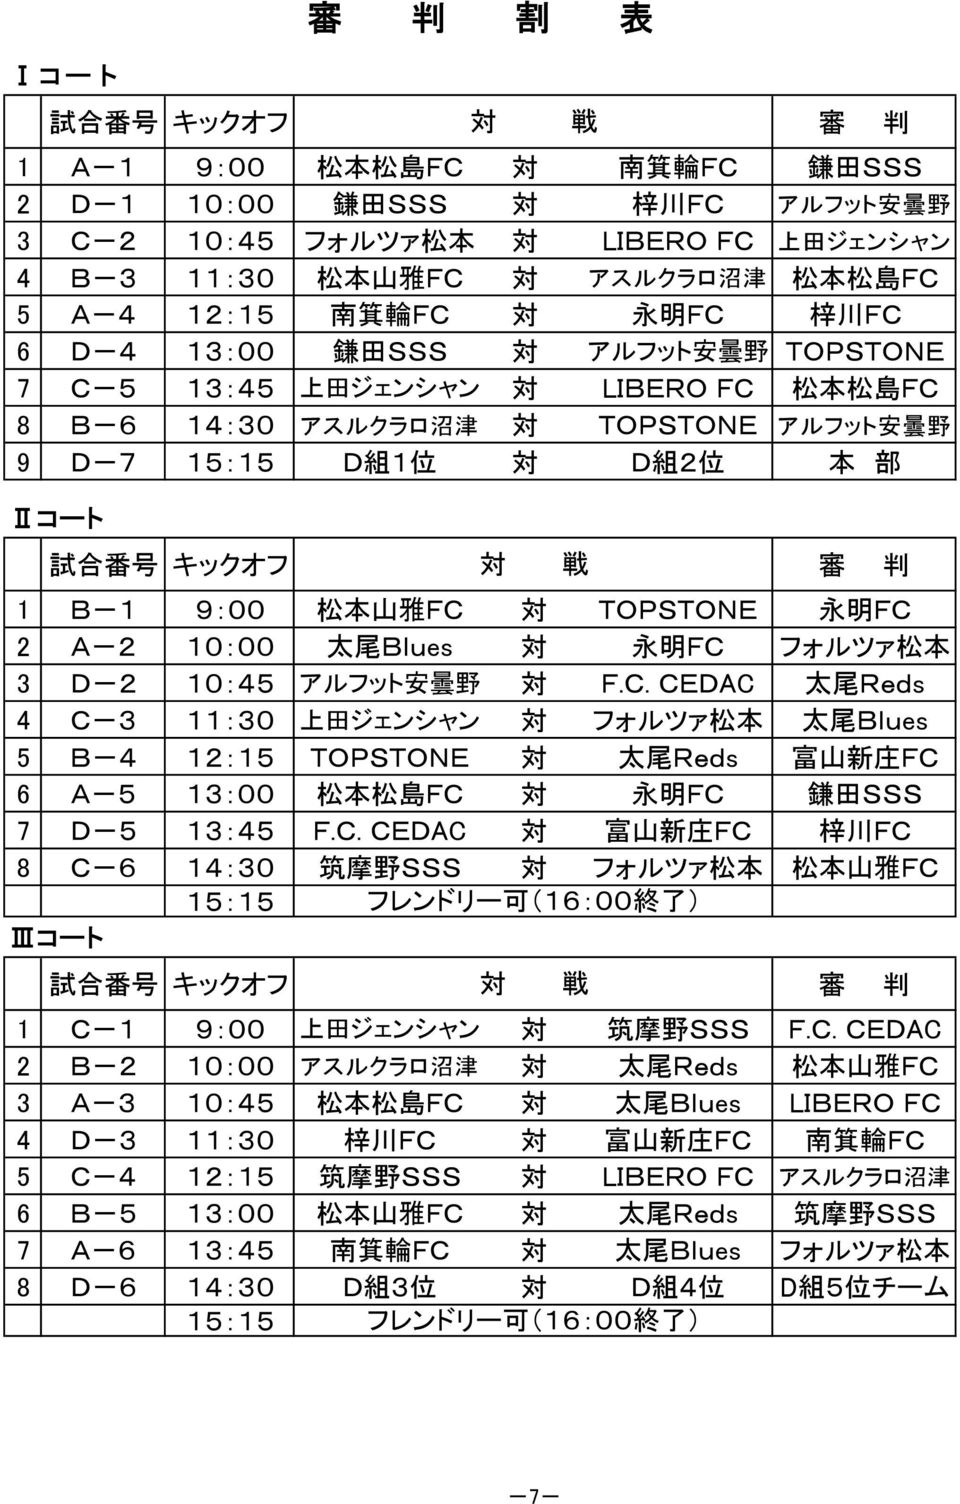 本 部 Ⅱコート 試 合 番 号 キックオフ 審 判 1 B-1 9:00 松 本 山 雅 FC 